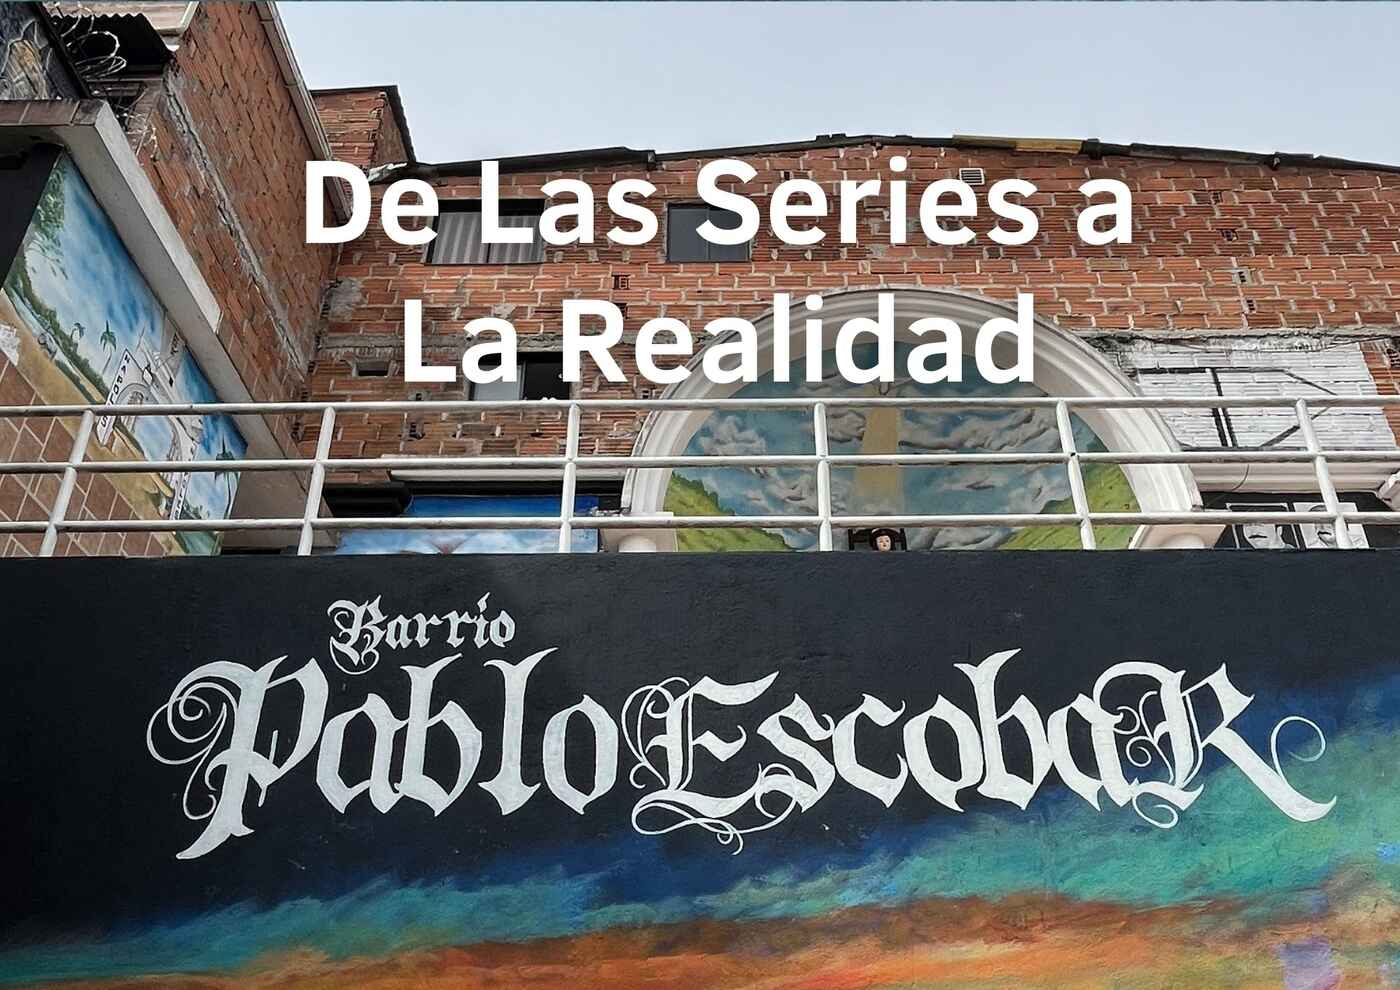 Tour de las series a la realidad (Pablo Escobar)